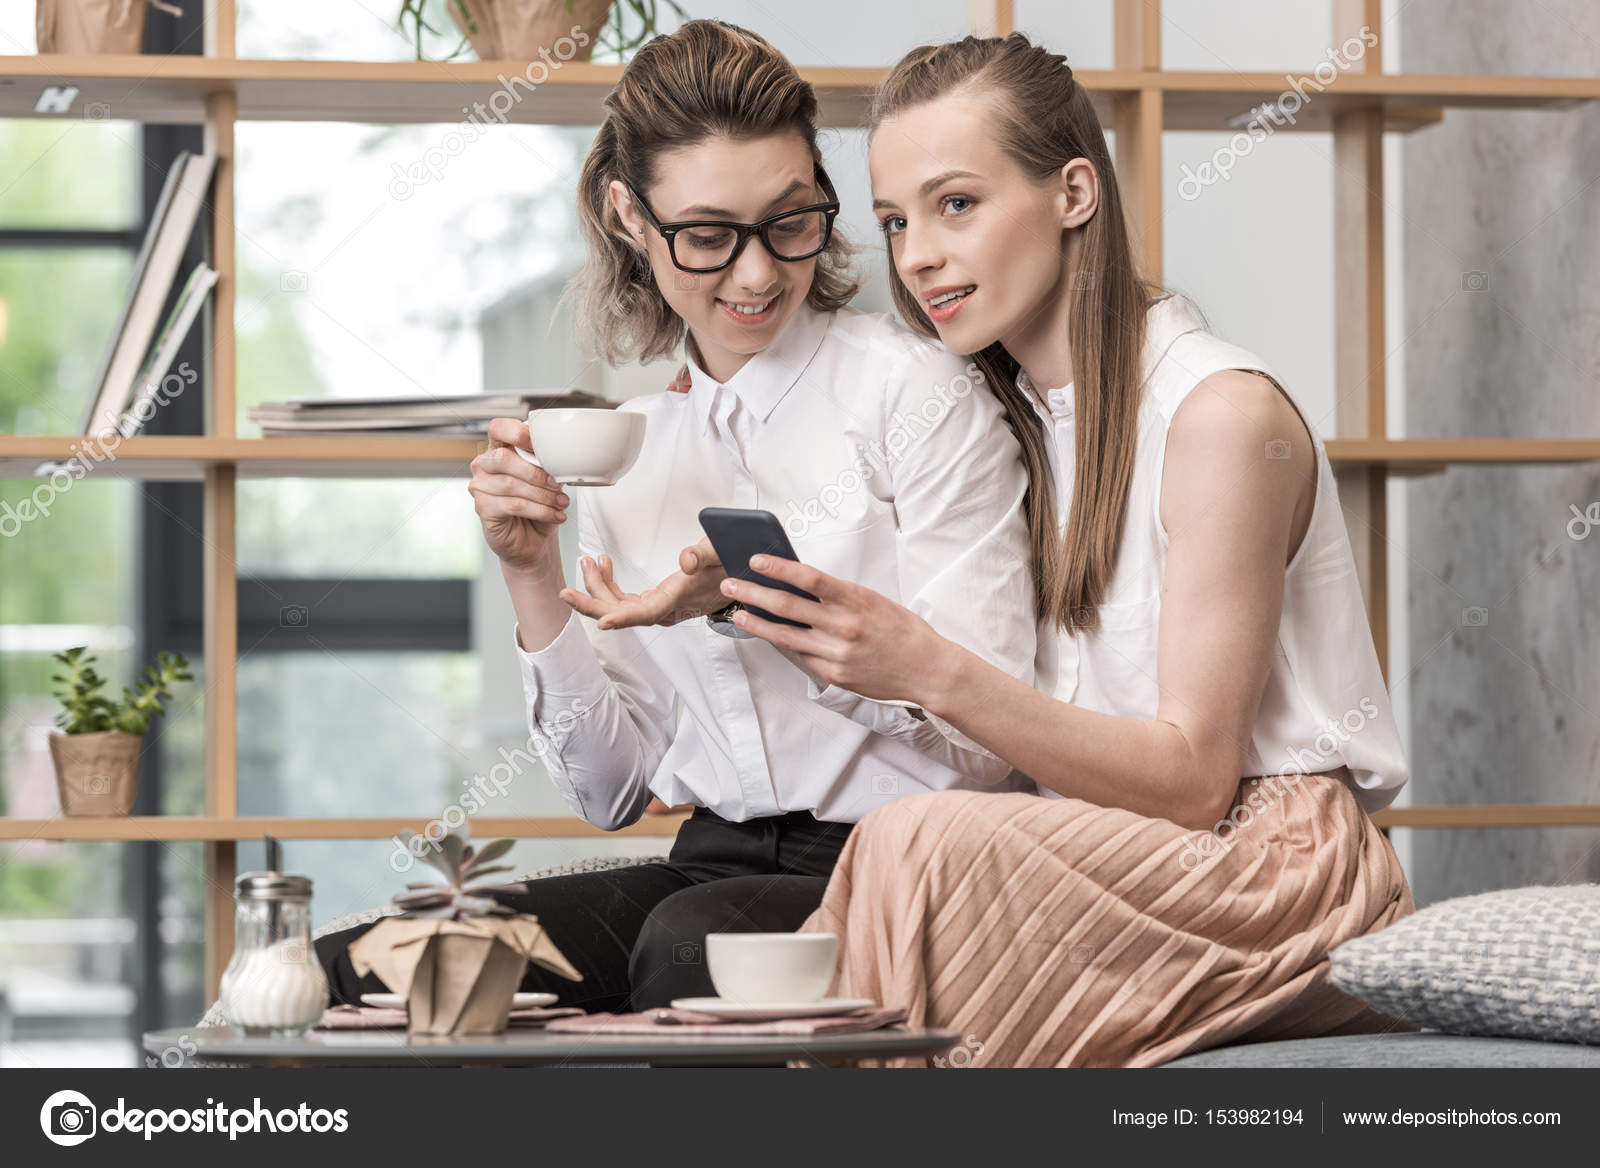 Лесбиянки пьют кофе стоковое фото ©DmitryPoch 153982194